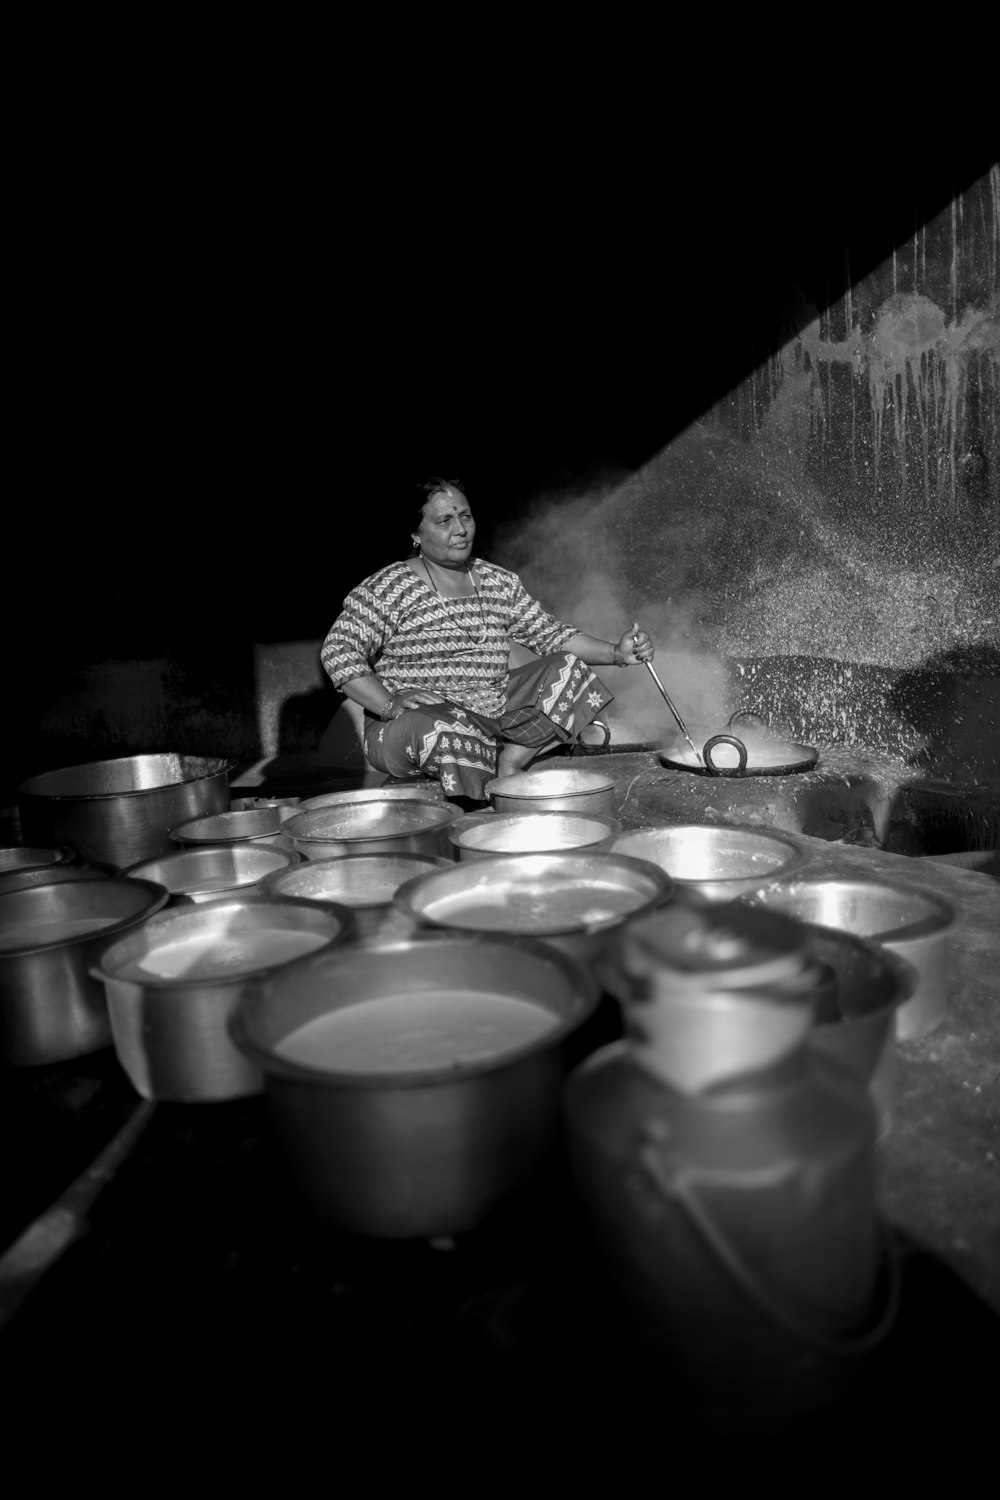 柄鍋を持ちながら料理をする女性のグレースケール写真